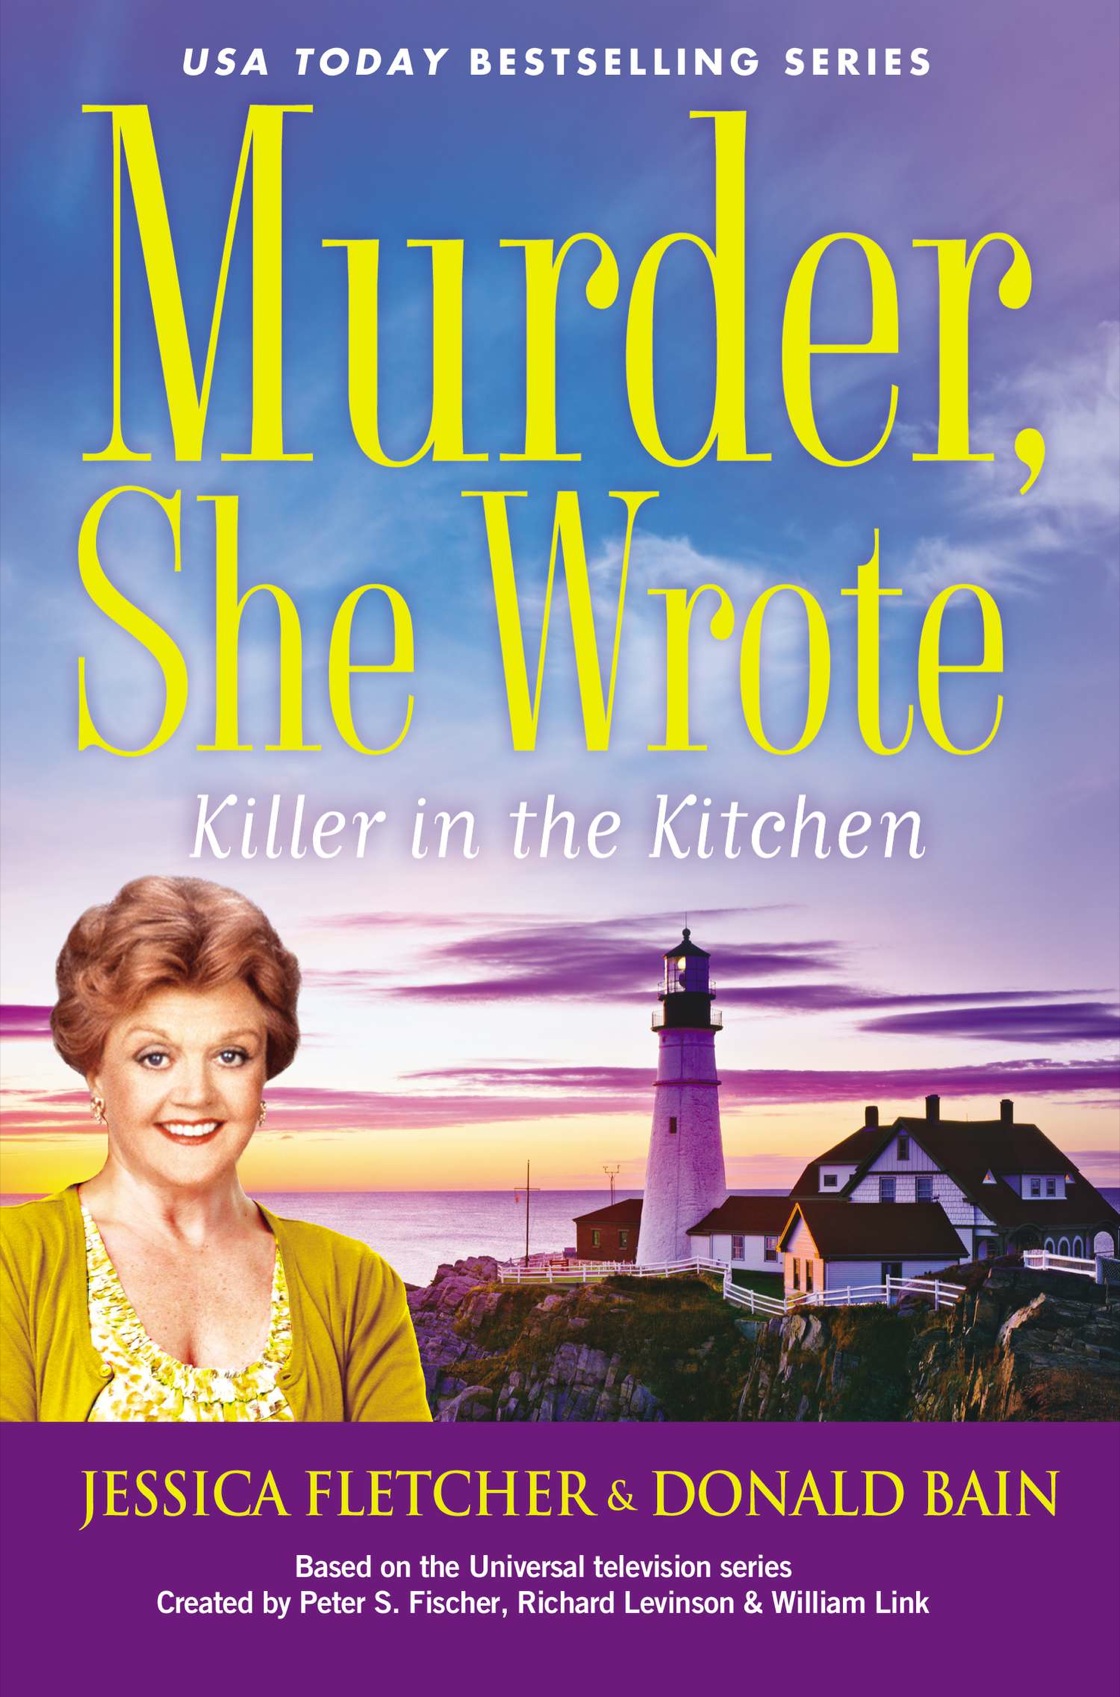 Killer in the Kitchen (2015)